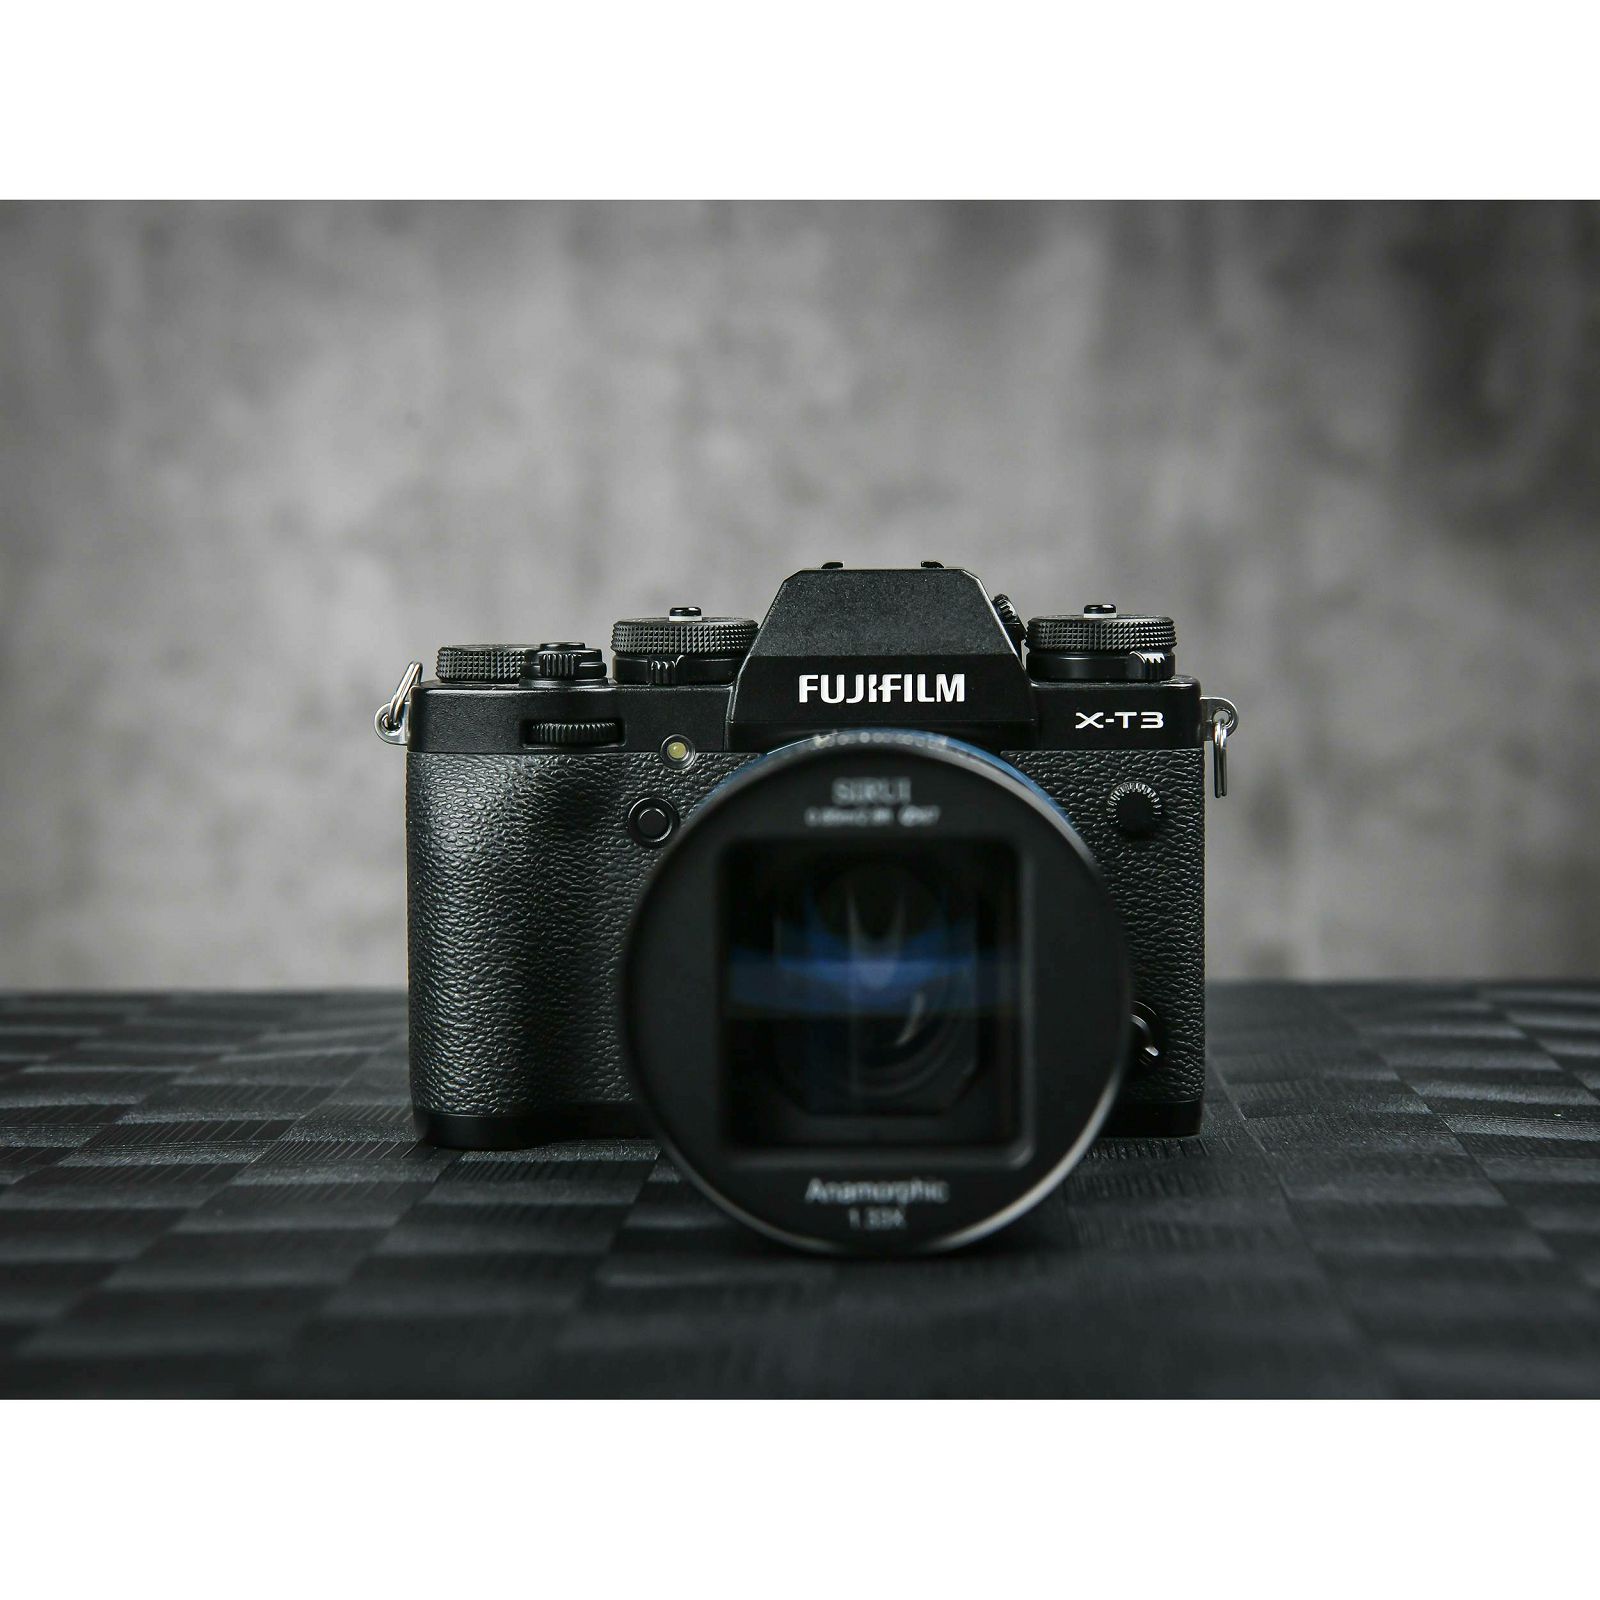 Sirui 50mm f/1.8 1.33x Anamorphic objektiv za Sony E (SR-MEK7E)